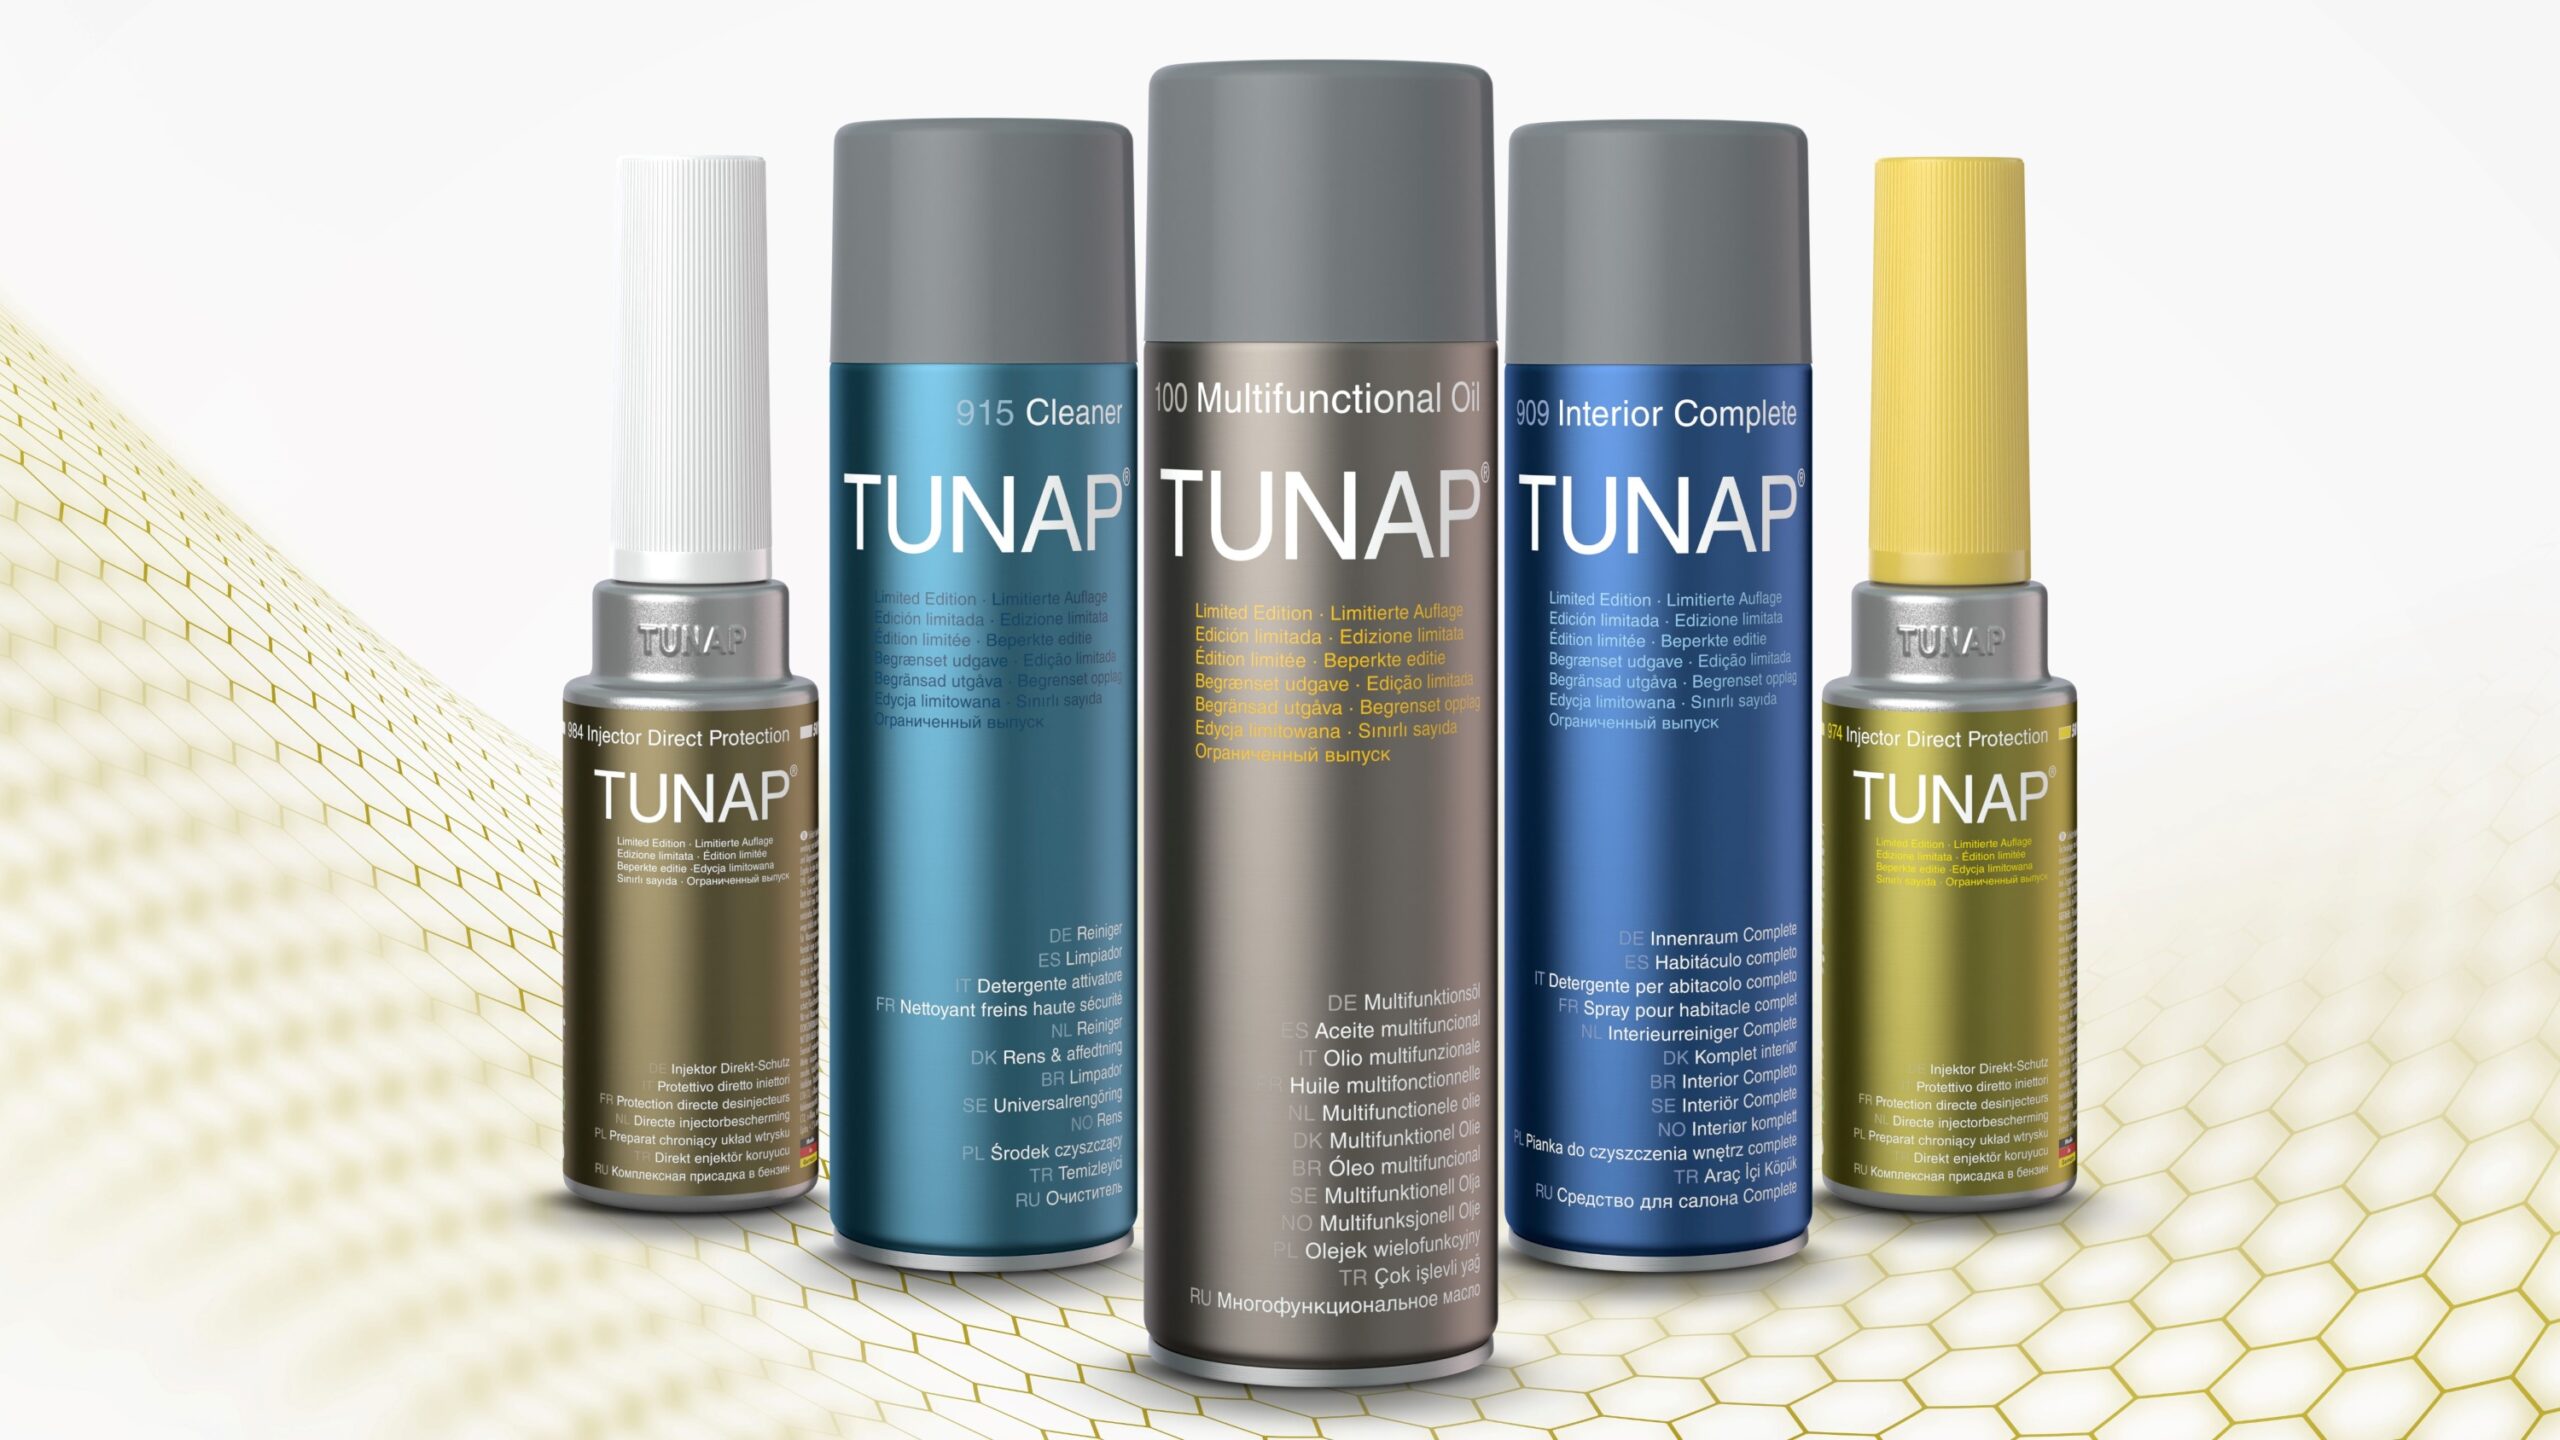 Die Limited Edition repräsentiert eine Auswahl der erfolgreichsten Tunap-Produkte. (Die Bildrechte liegen bei dem Verfasser der Mitteilung.)